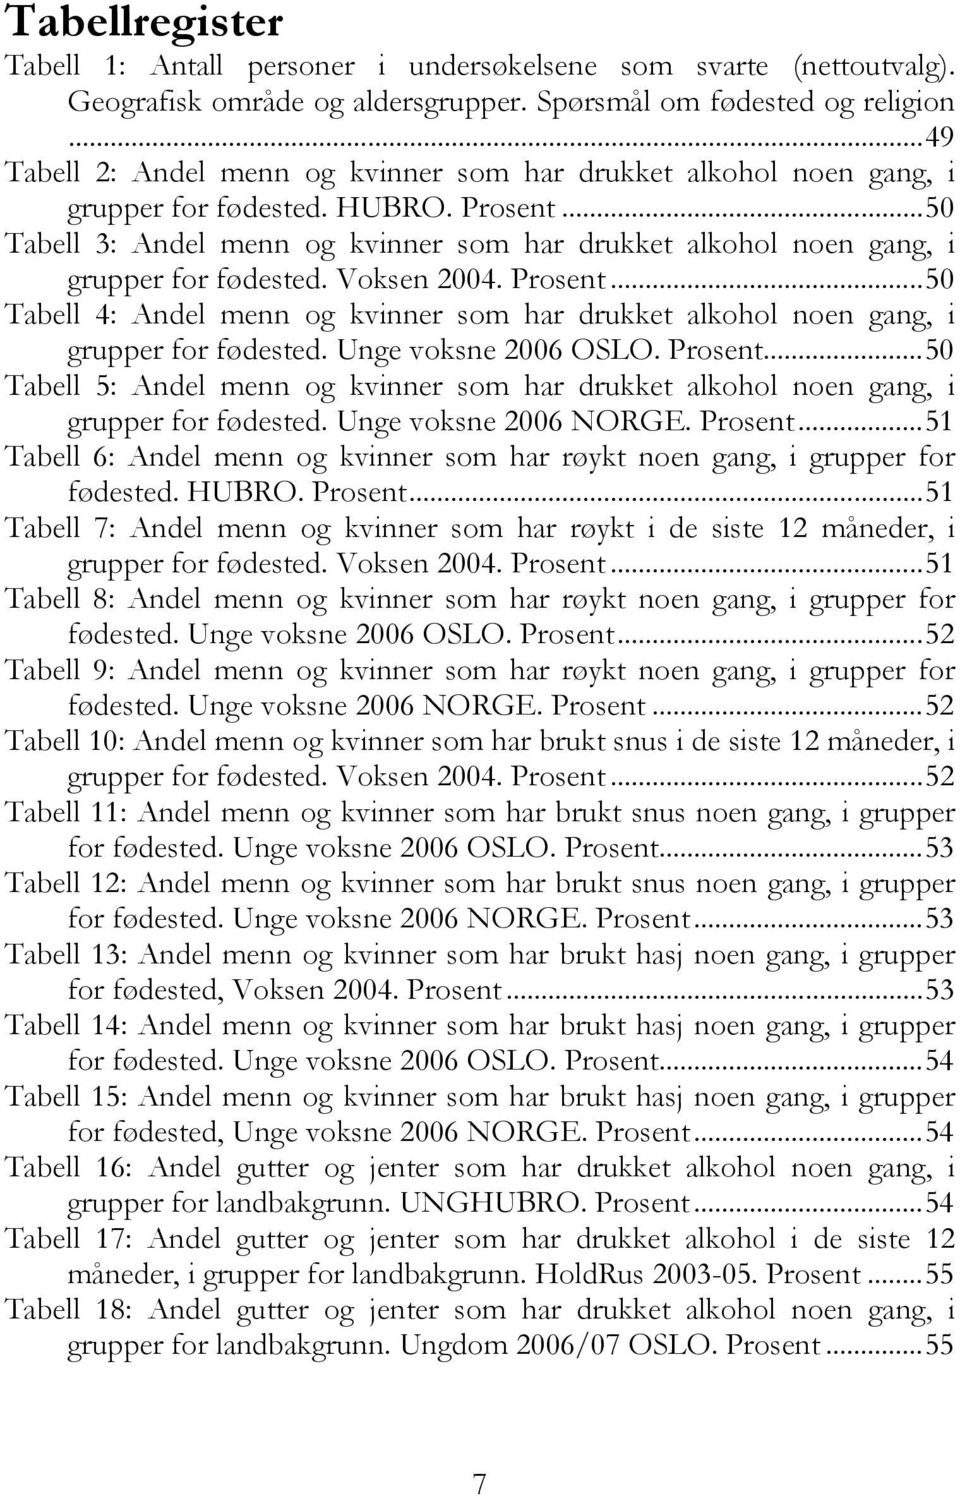 ..50 Tabell 3: Andel menn og kvinner som har drukket alkohol noen gang, i grupper for fødested. Voksen 2004. Prosent.